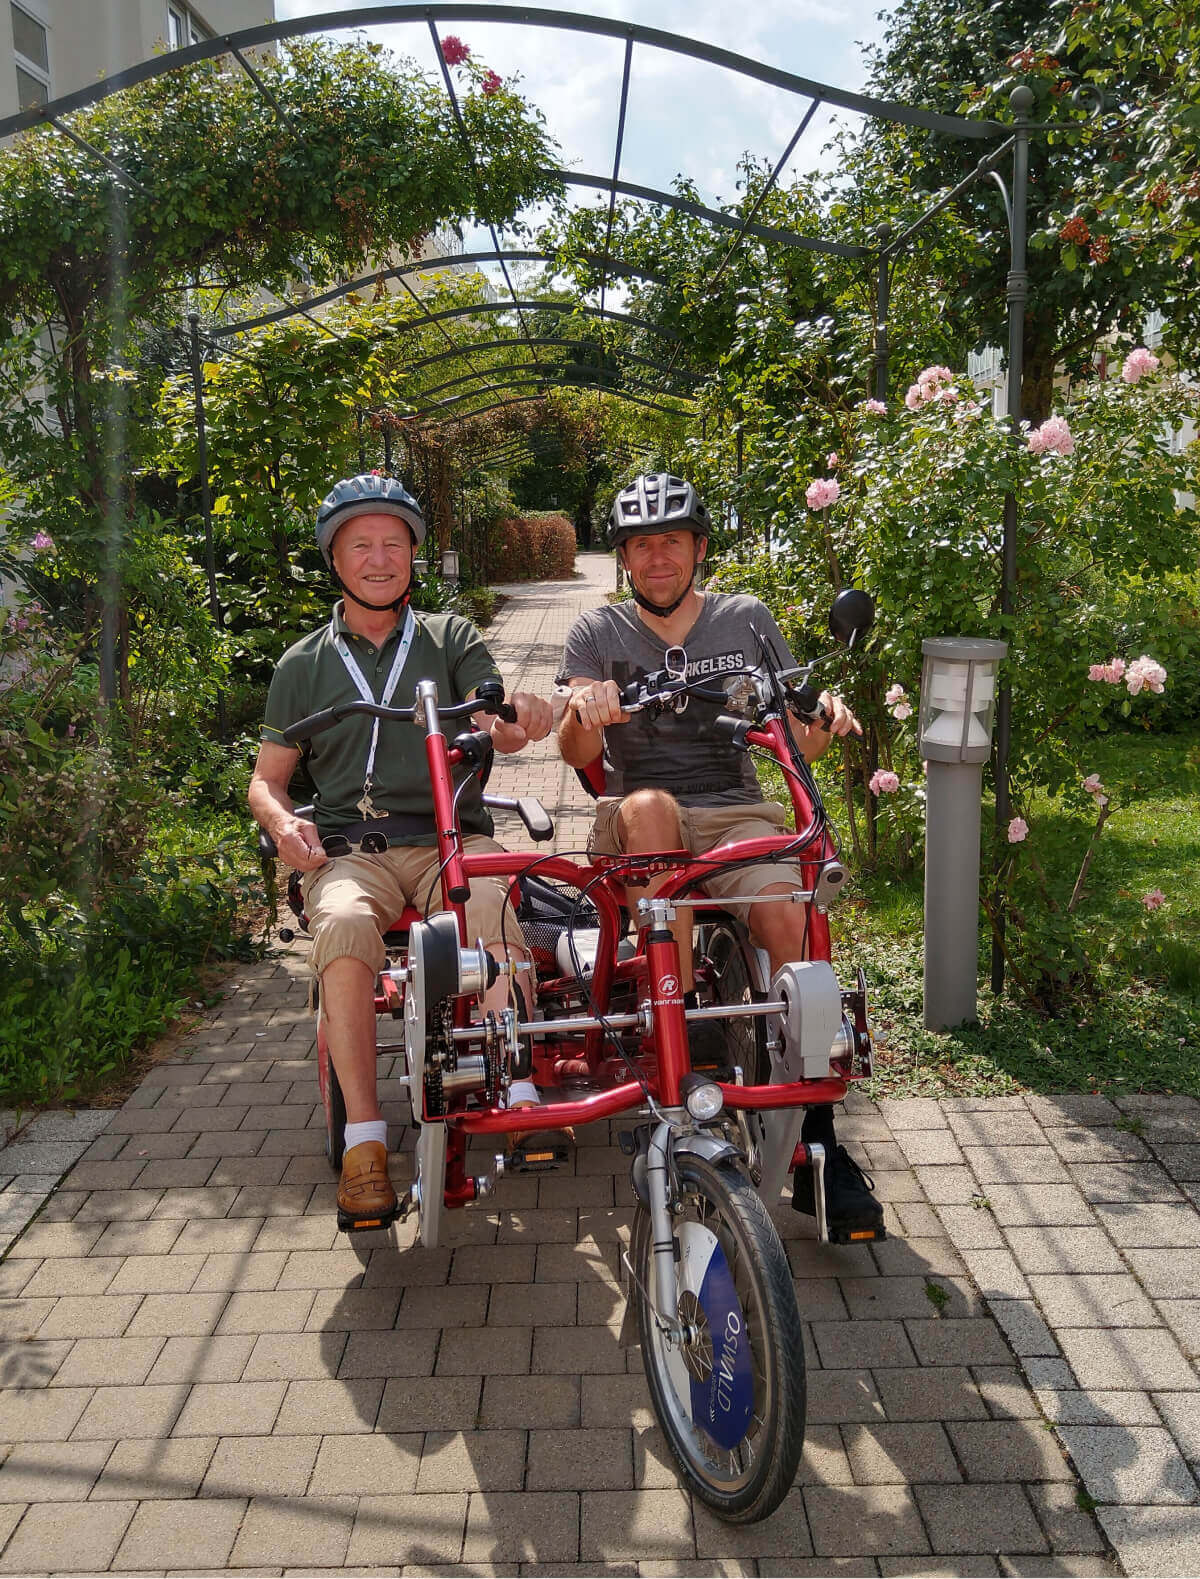 Fahrt auf dem Mehrgenerationen-Fahrrad vor der Senioren-Residenz "Elisa" in Ingolstadt